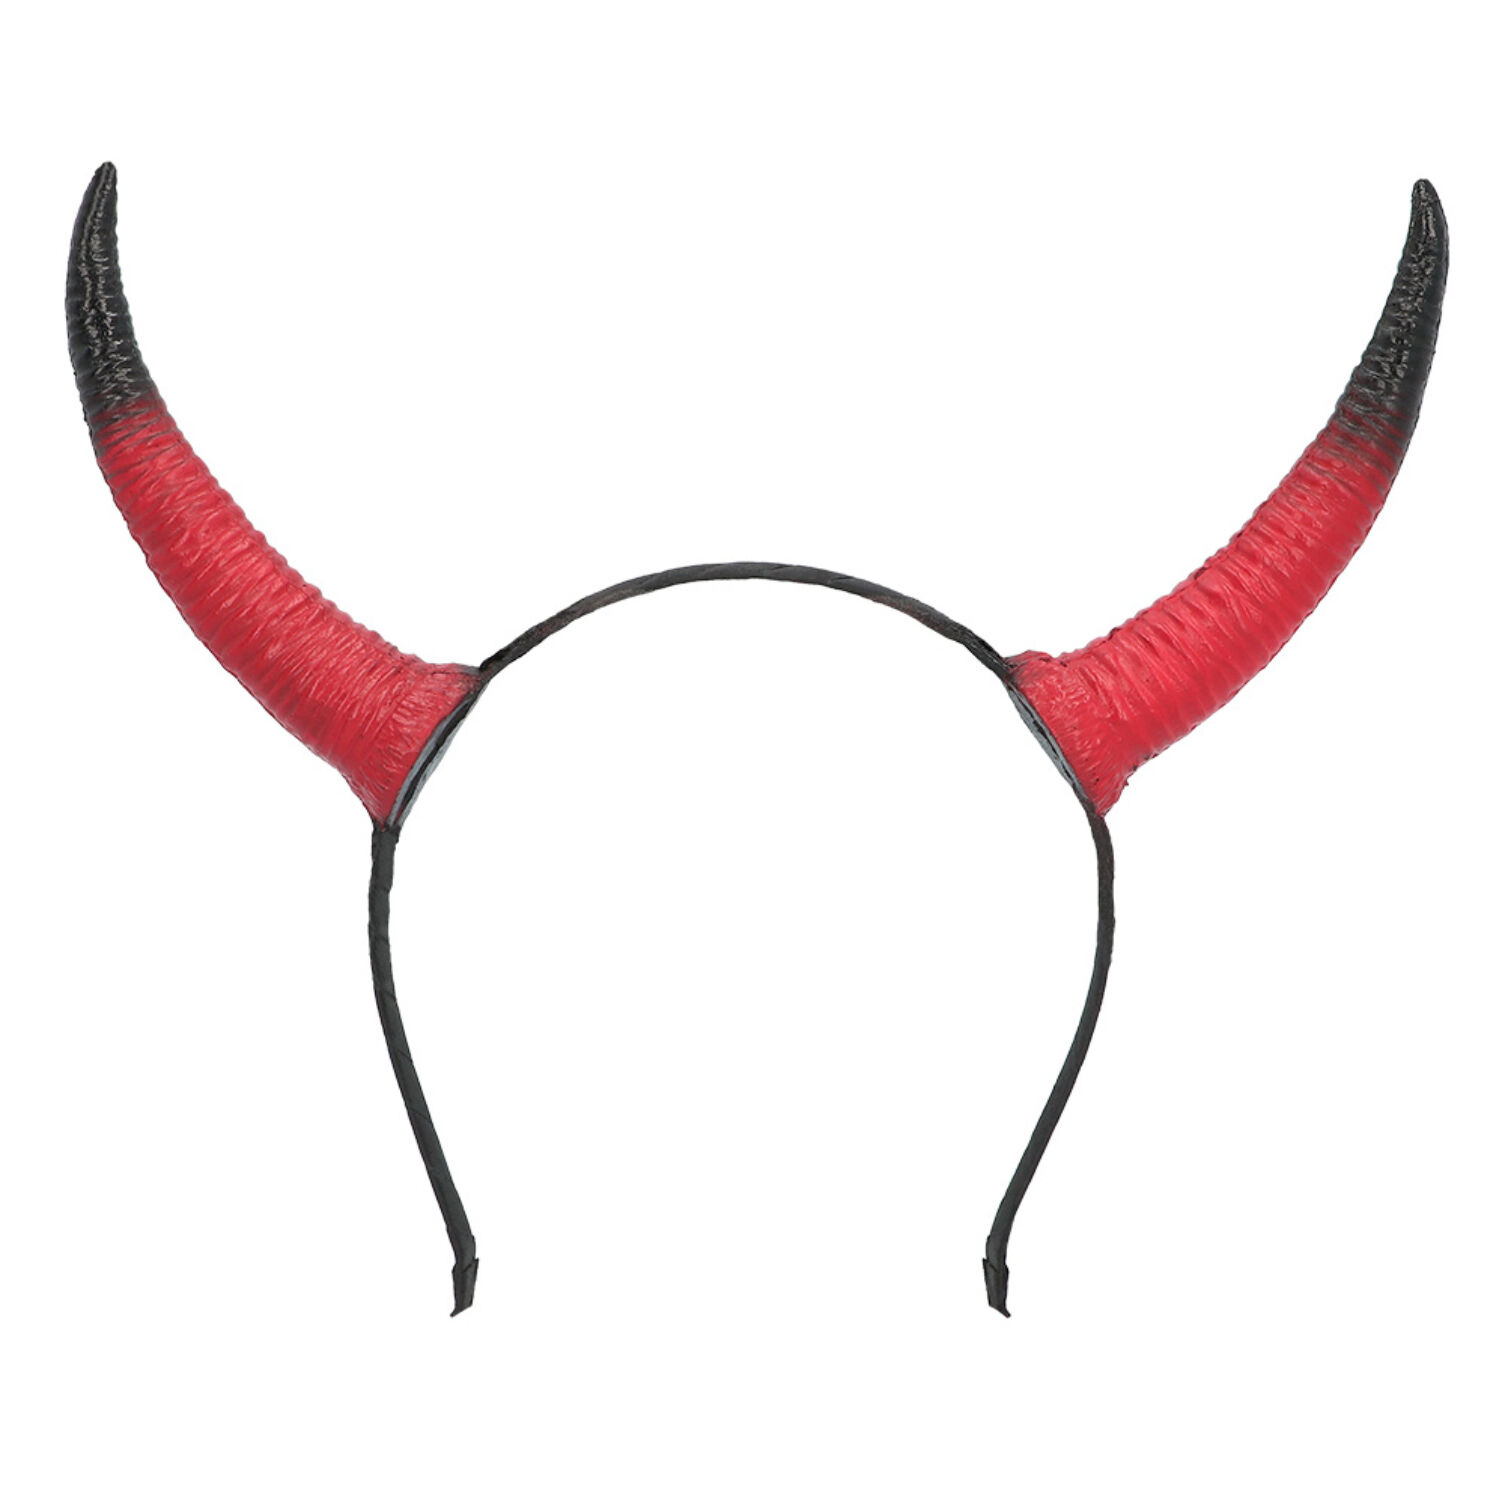 NEU Teufelshrner auf Haarreif, schwarz-rot